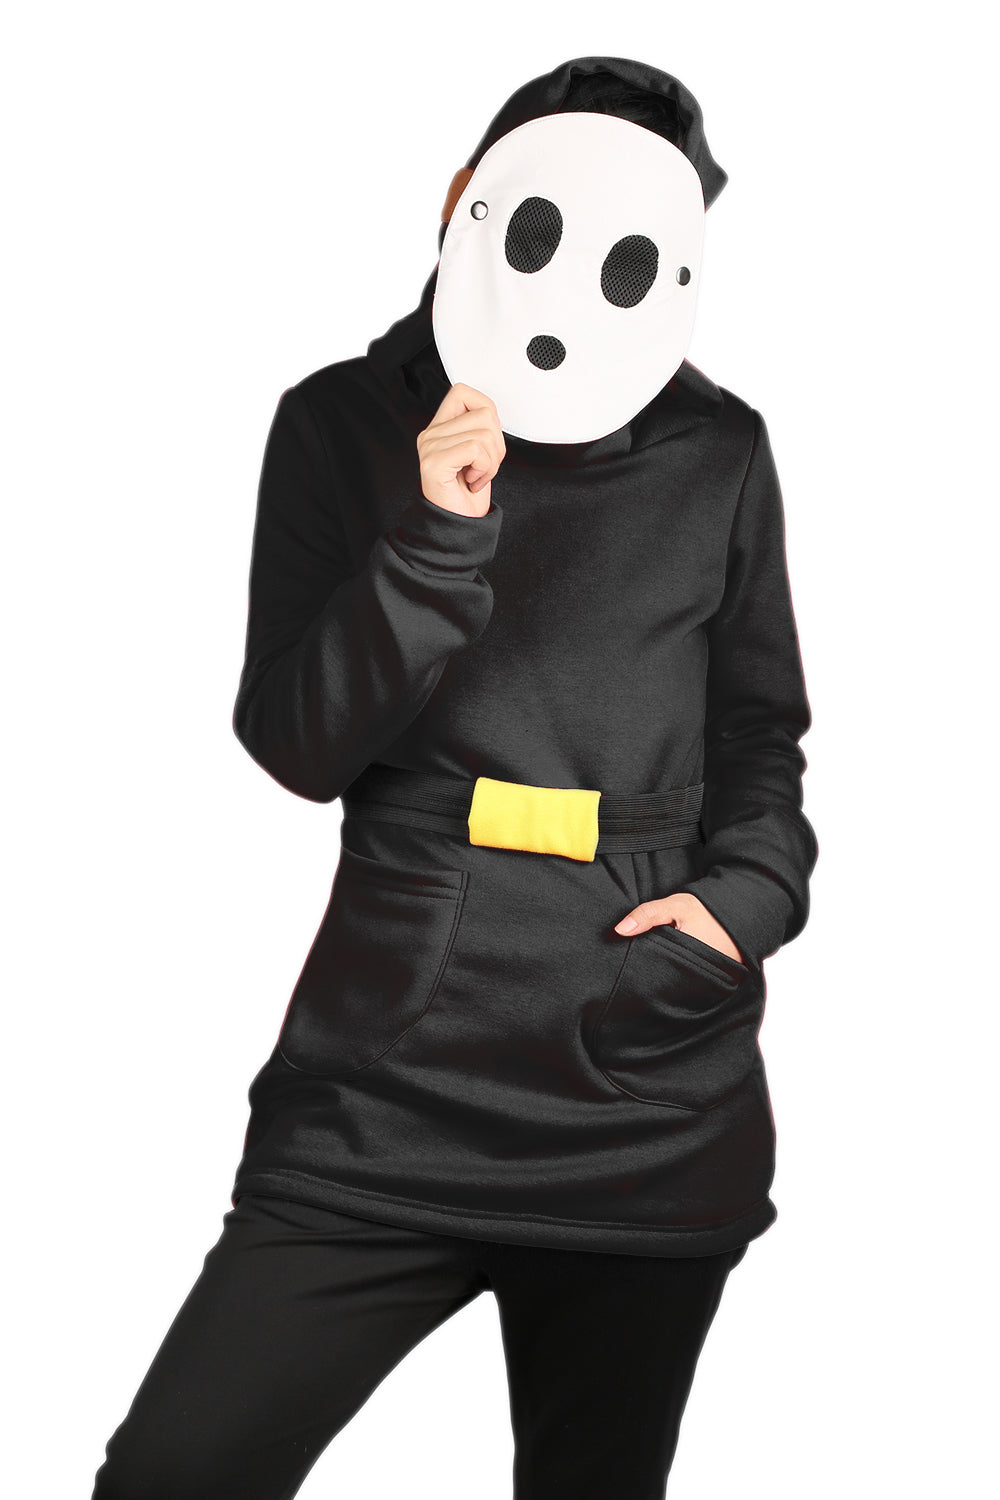 【Pre-order, in production】Xcoser Mario Series Shy Guy Hoodie Women's Hooded Black Sweatshirt Cosplay Costume